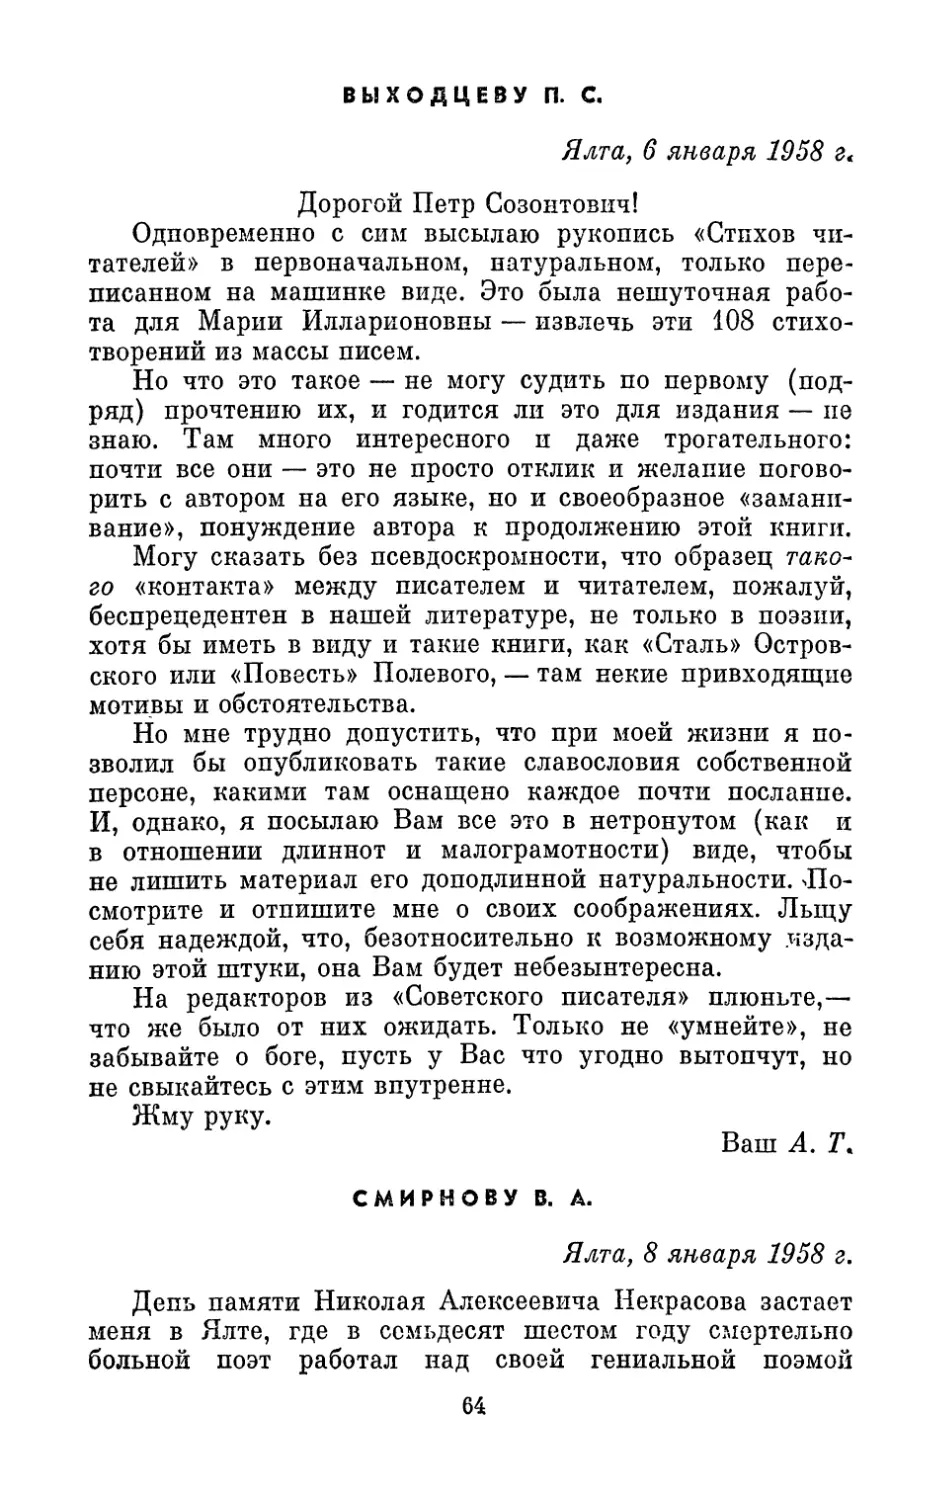 Выходцеву П. С., 6 января 1958 г.
Смирнову В. А., 8 января 1958 г.